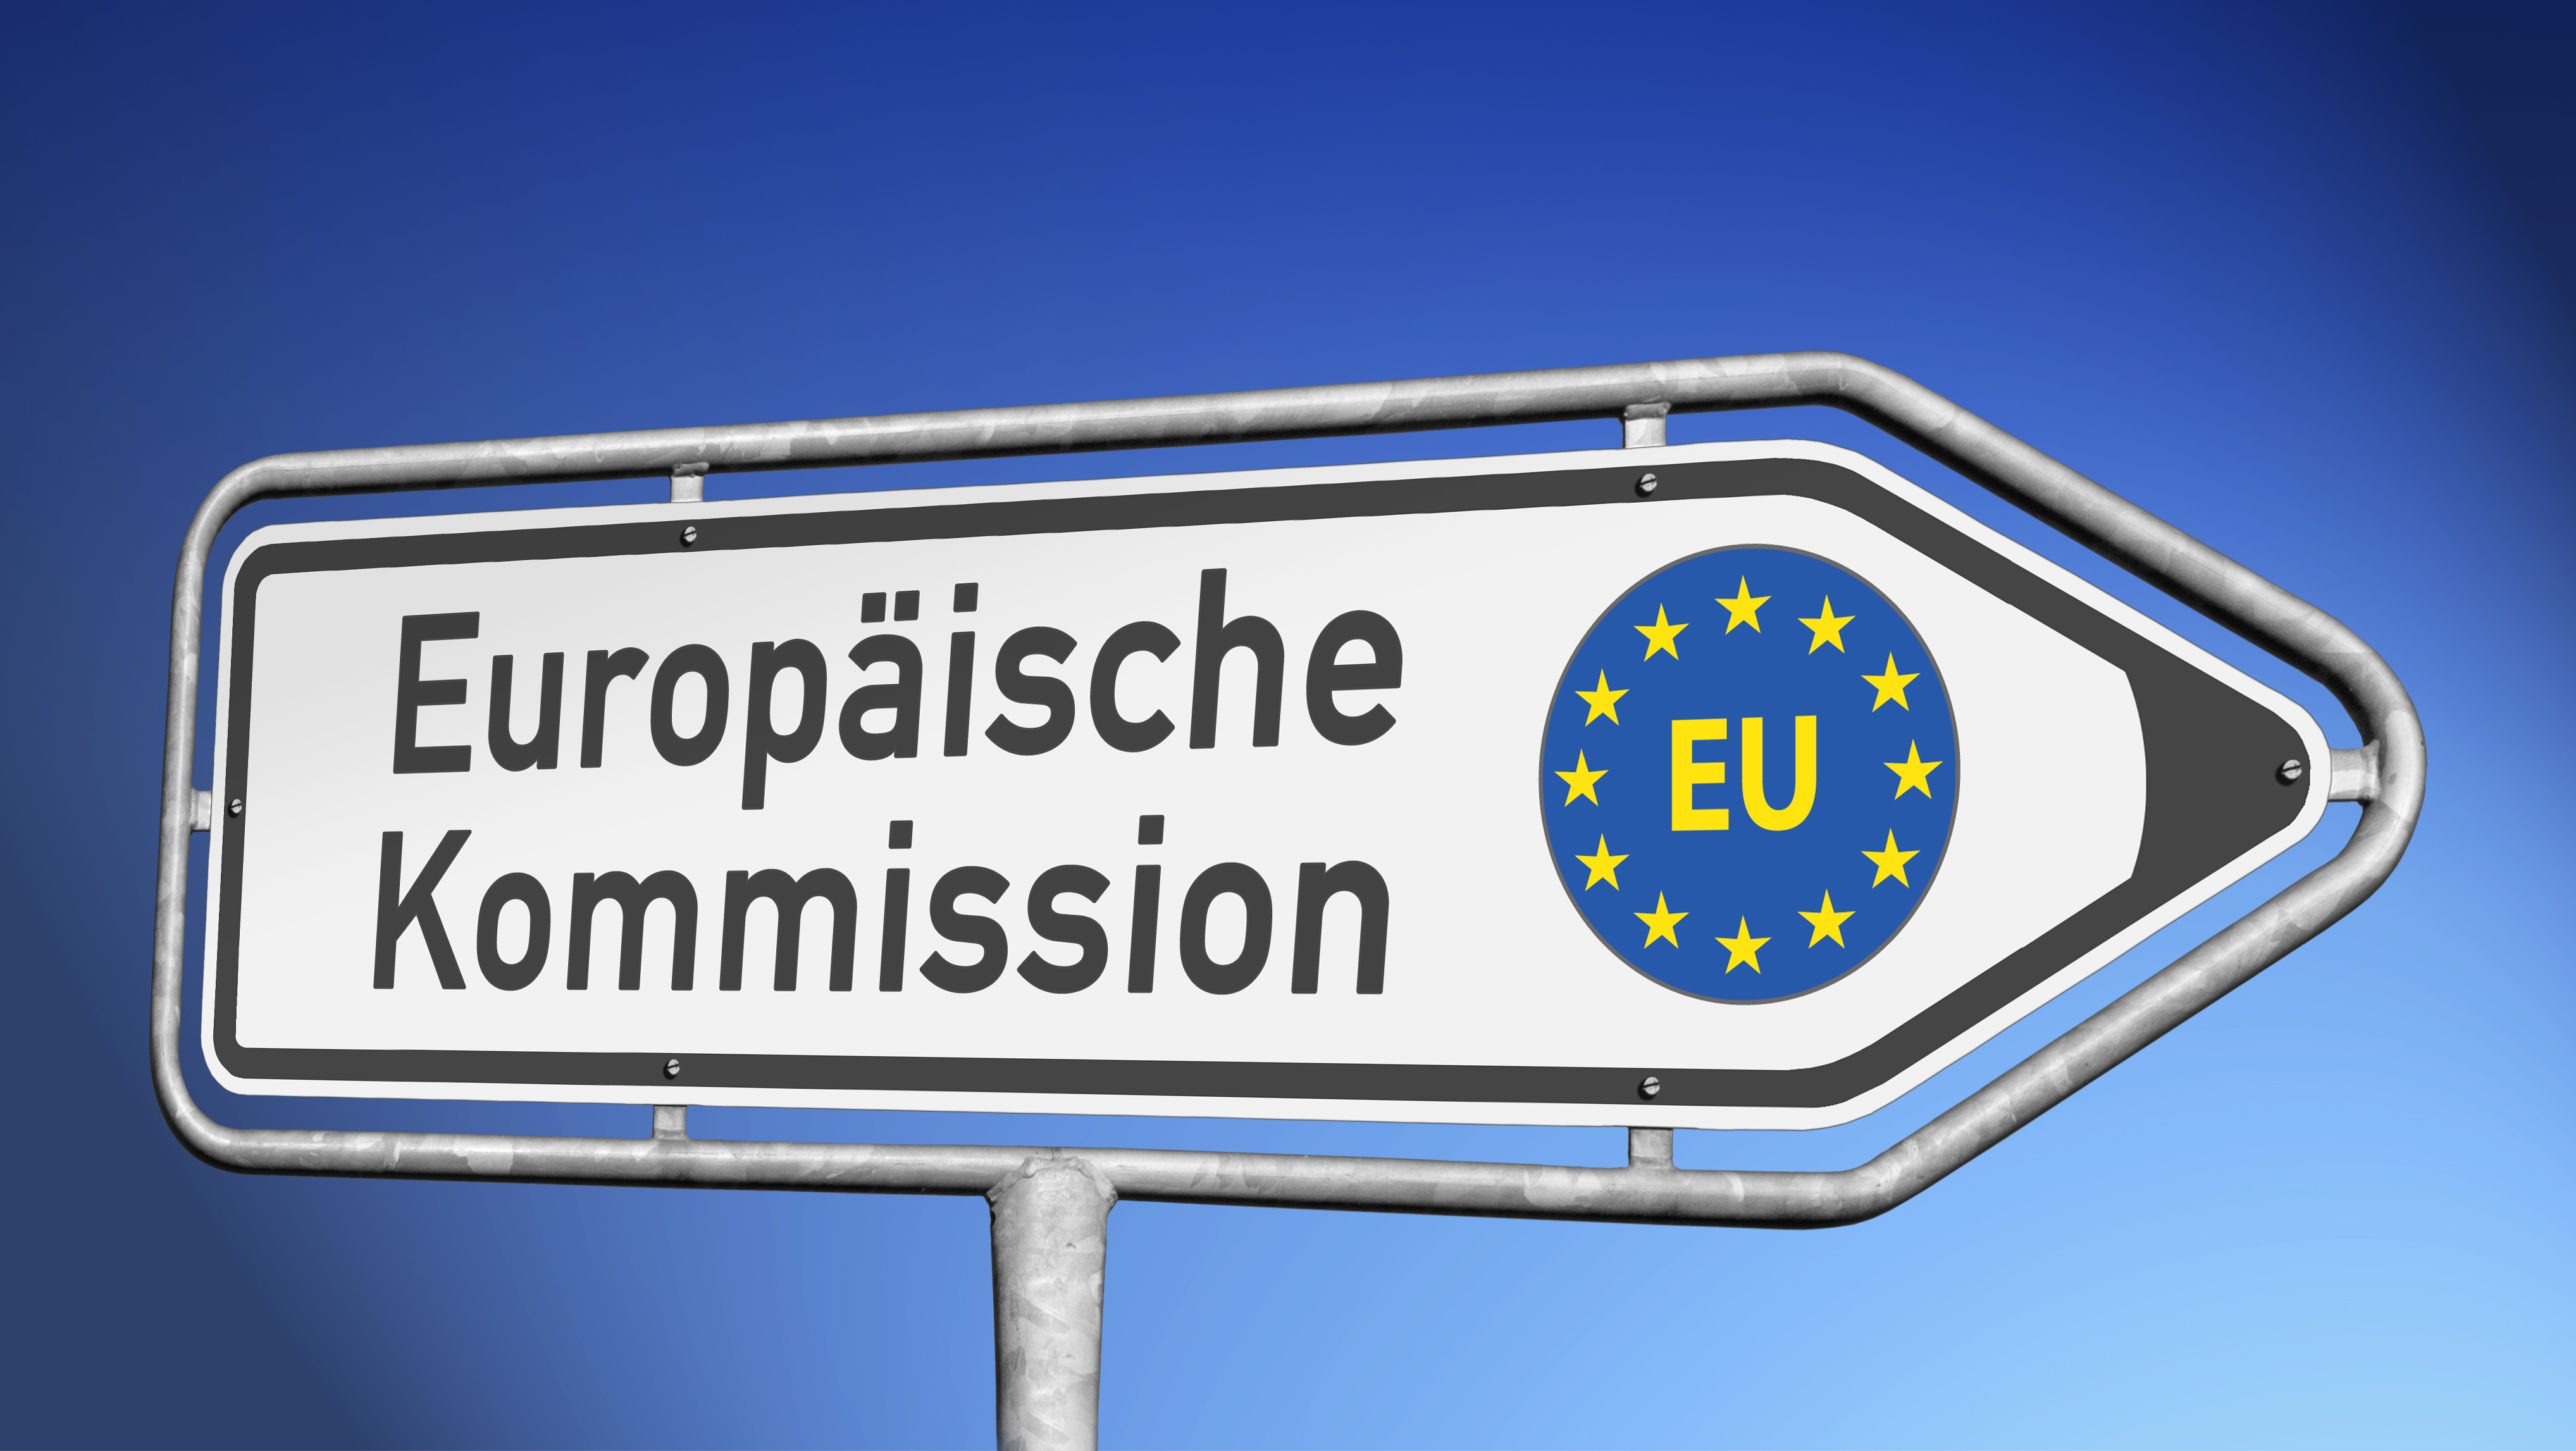 Ein Wegweiserschild auf dem Euopäische Kommission geschrieben steht